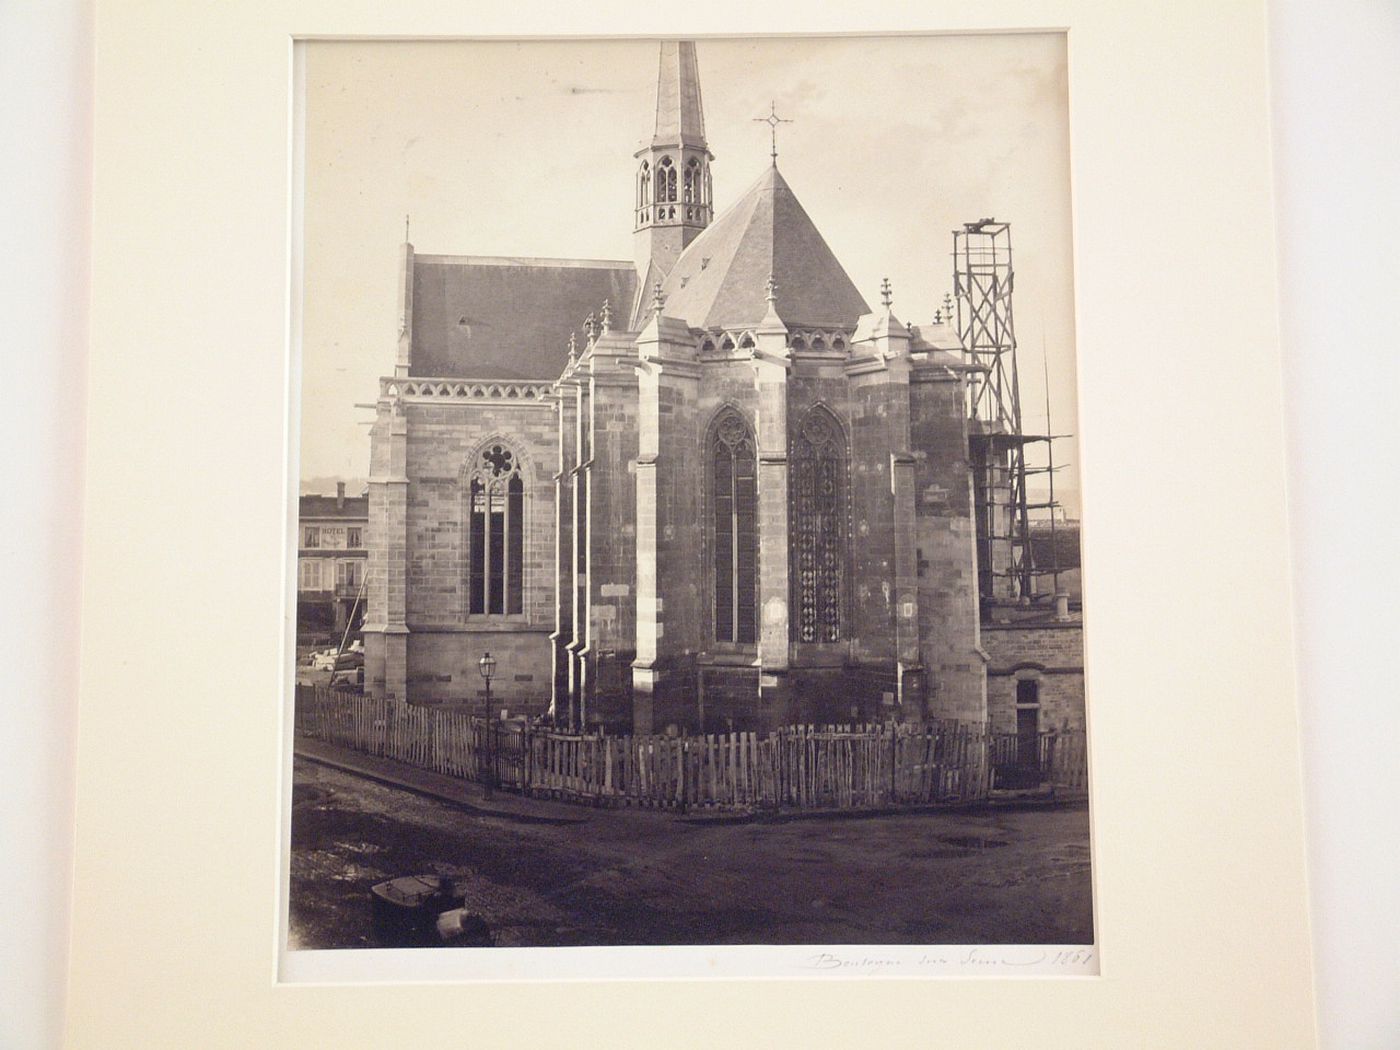 Exterior view of apse of l'Église Notre-Dame de Boulogne, Boulogne-sur-Seine, France